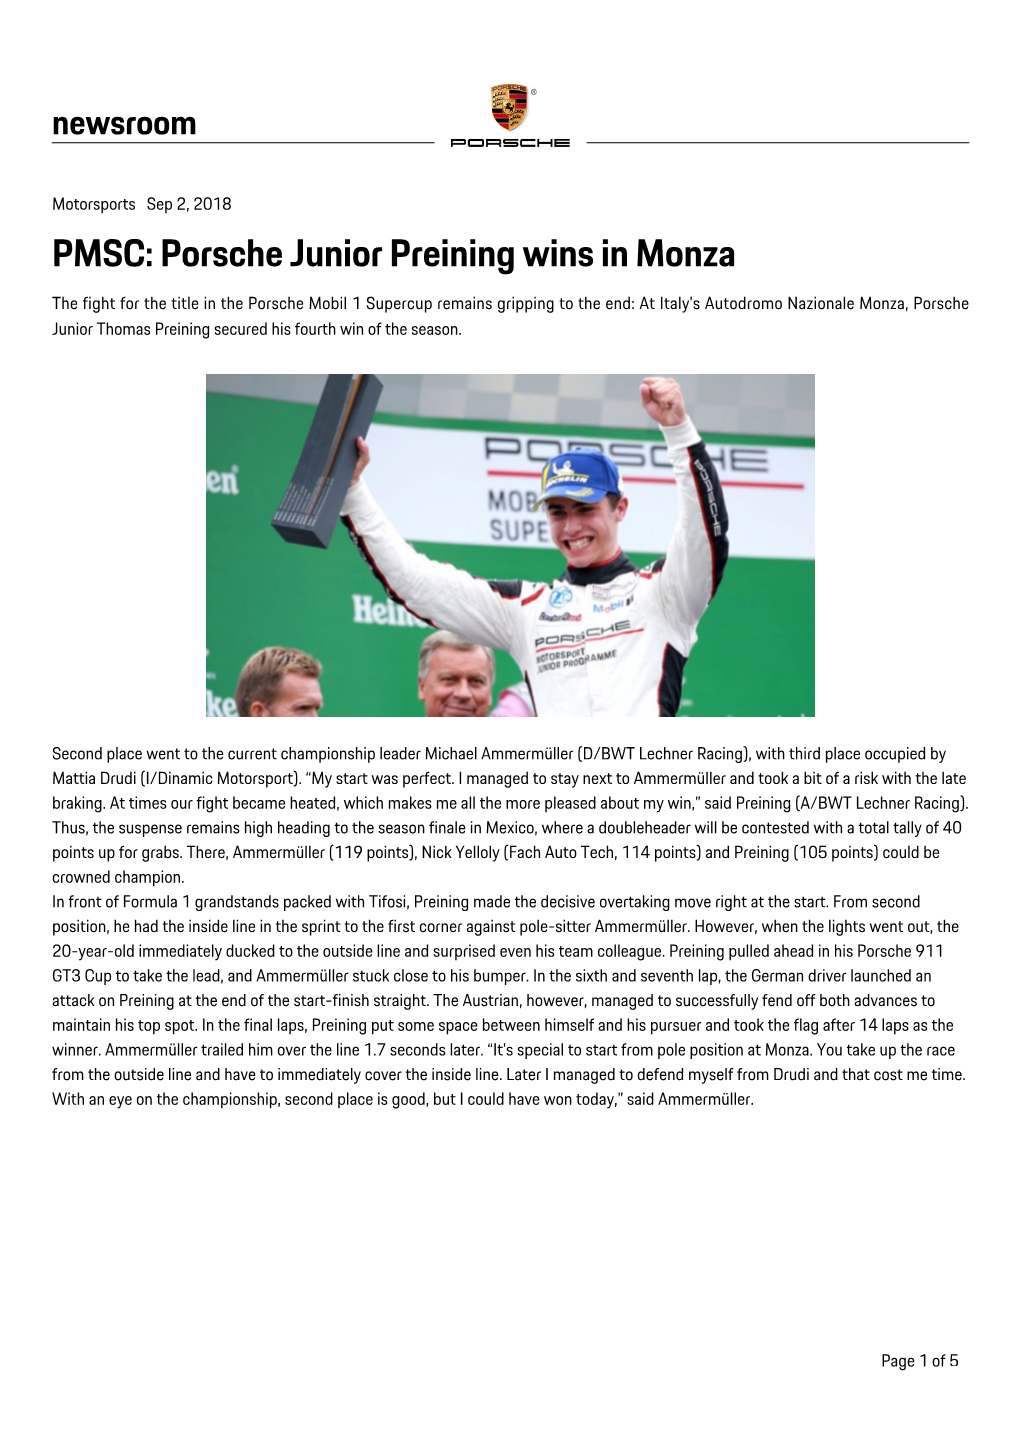 Porsche Junior Preining Wins in Monza